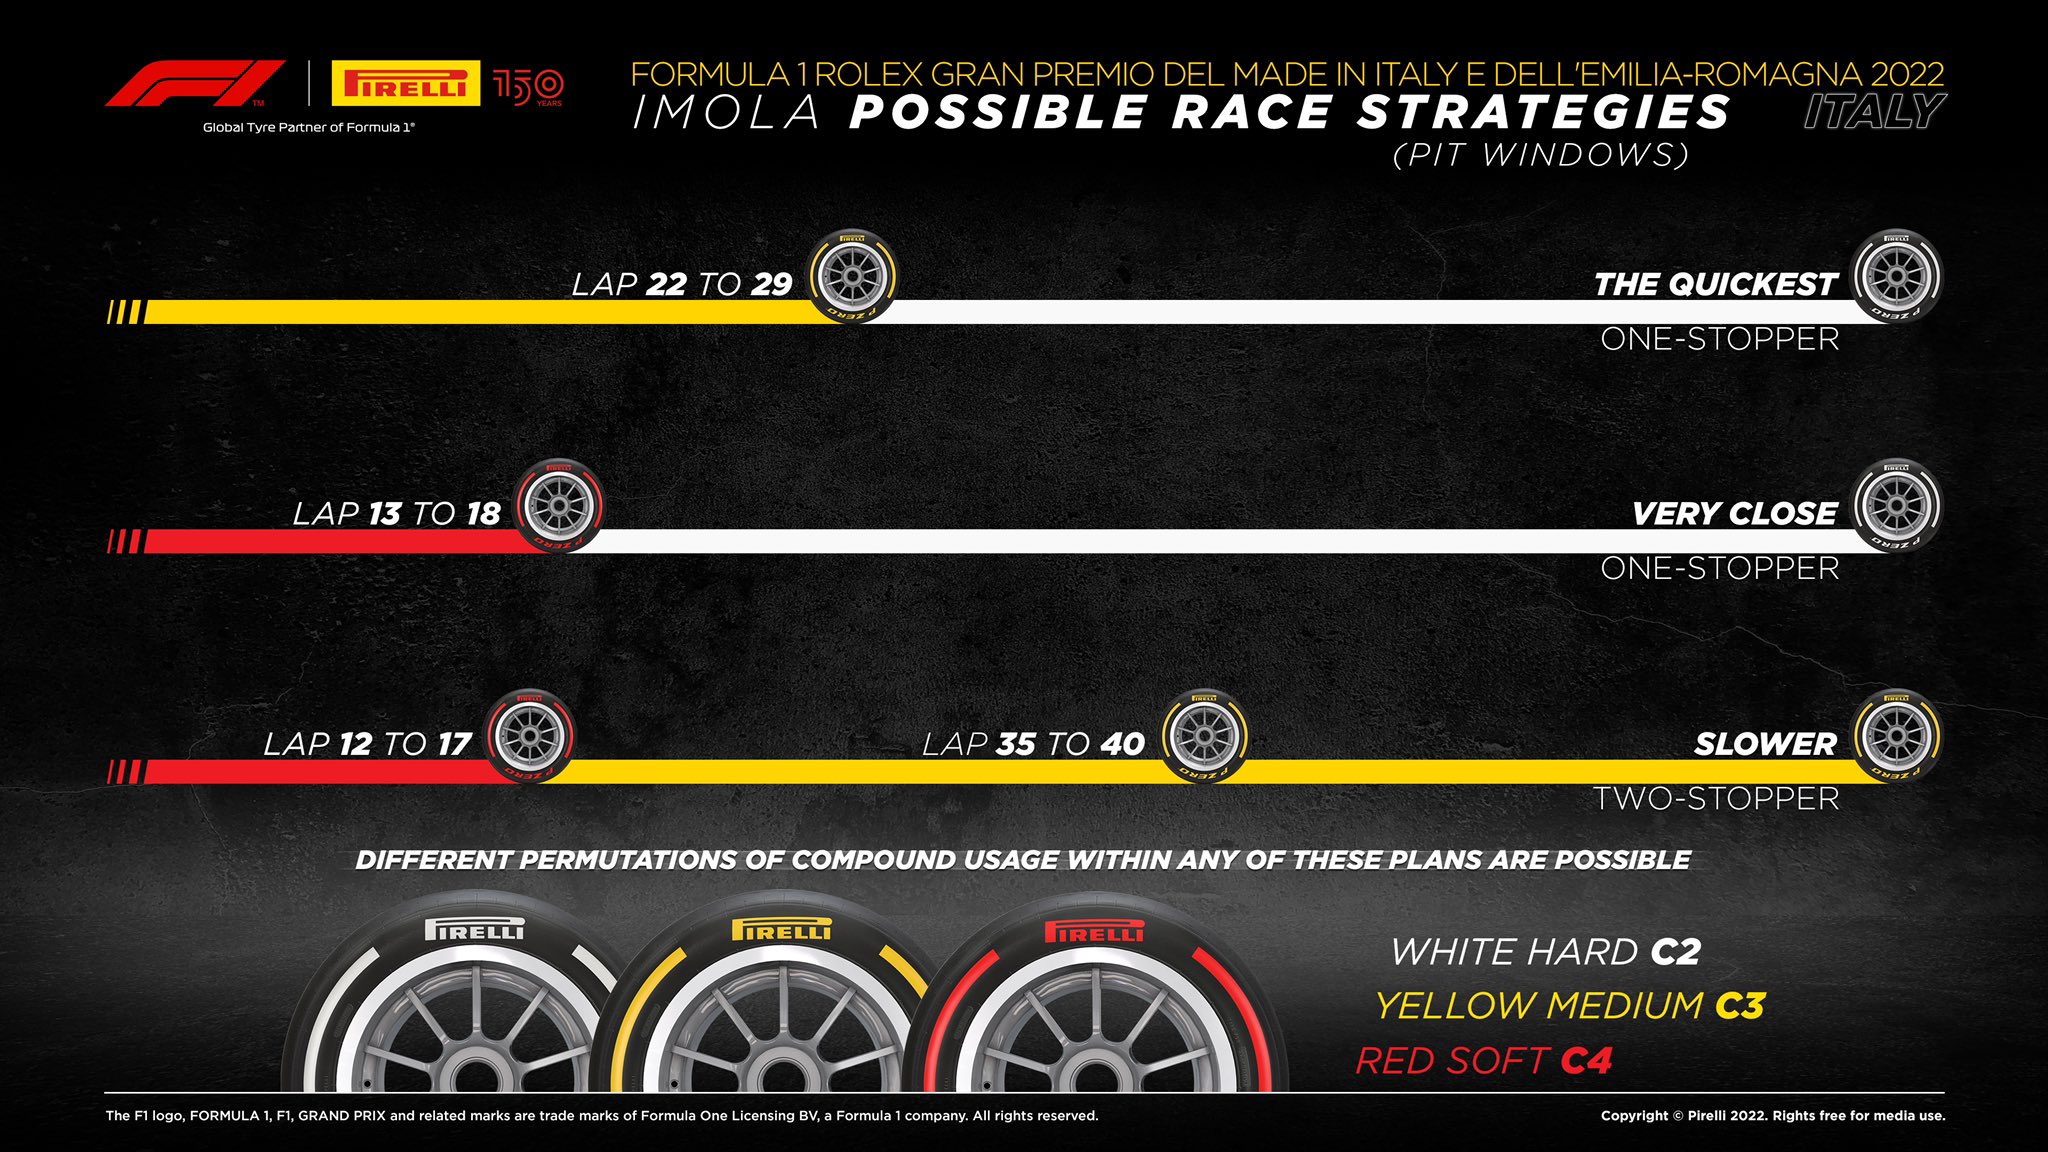 Αυτές είναι οι στρατηγικές που προτείνει η Pirelli.